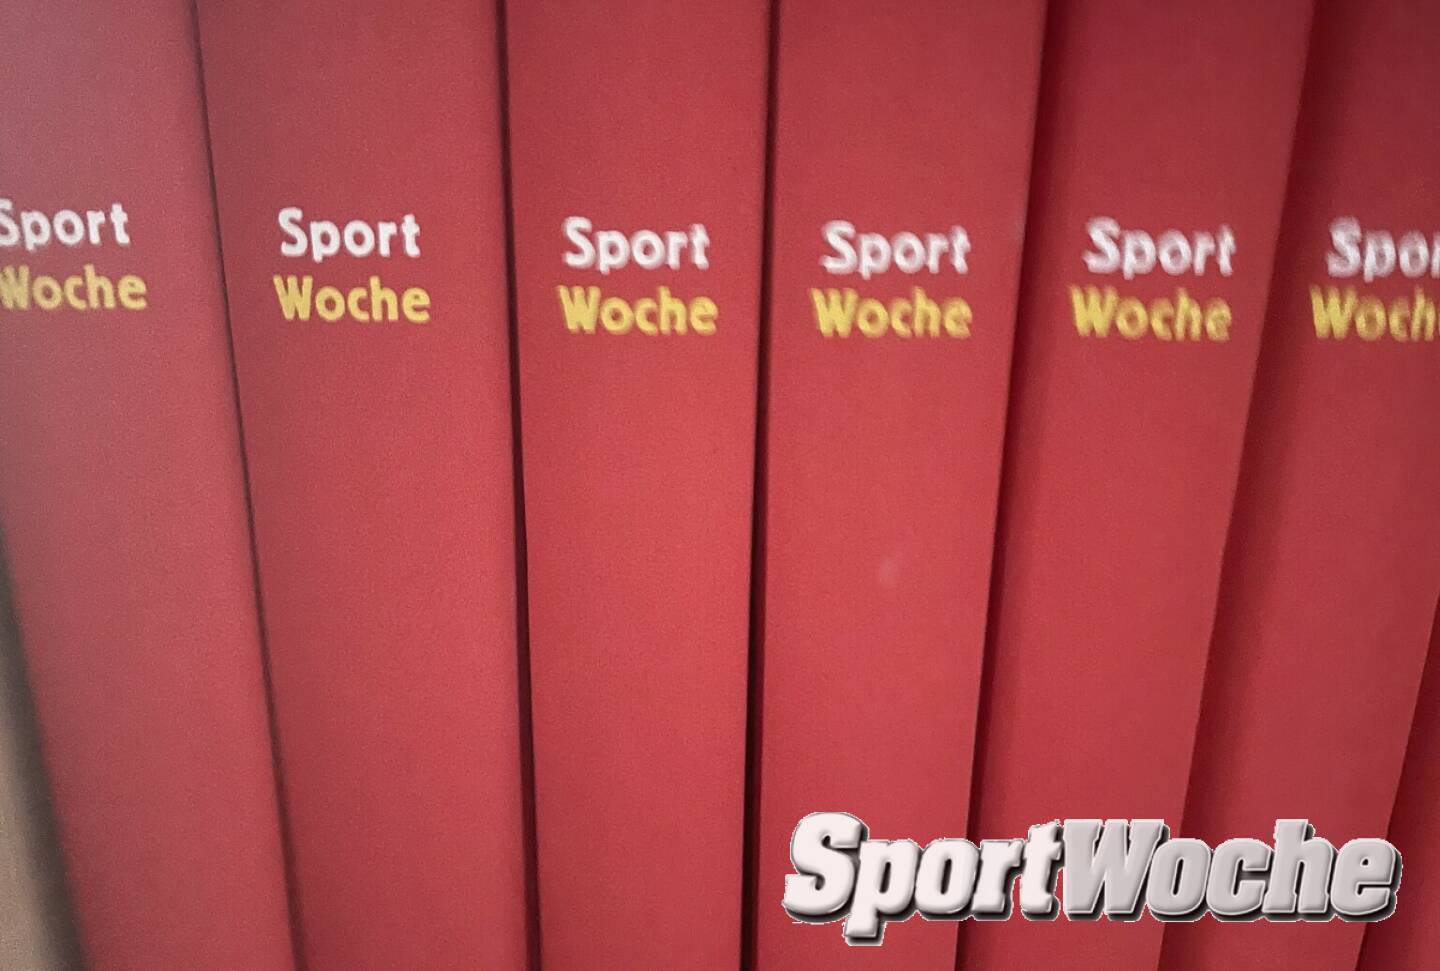 07.11.2022: ... , Mehr unter http://www.sportgeschichte.at . Der neue SportWoche Podcast ...  . Unter http://www.sportgeschichte.at/sportwochepodcast sieht man alle Folgen ... 